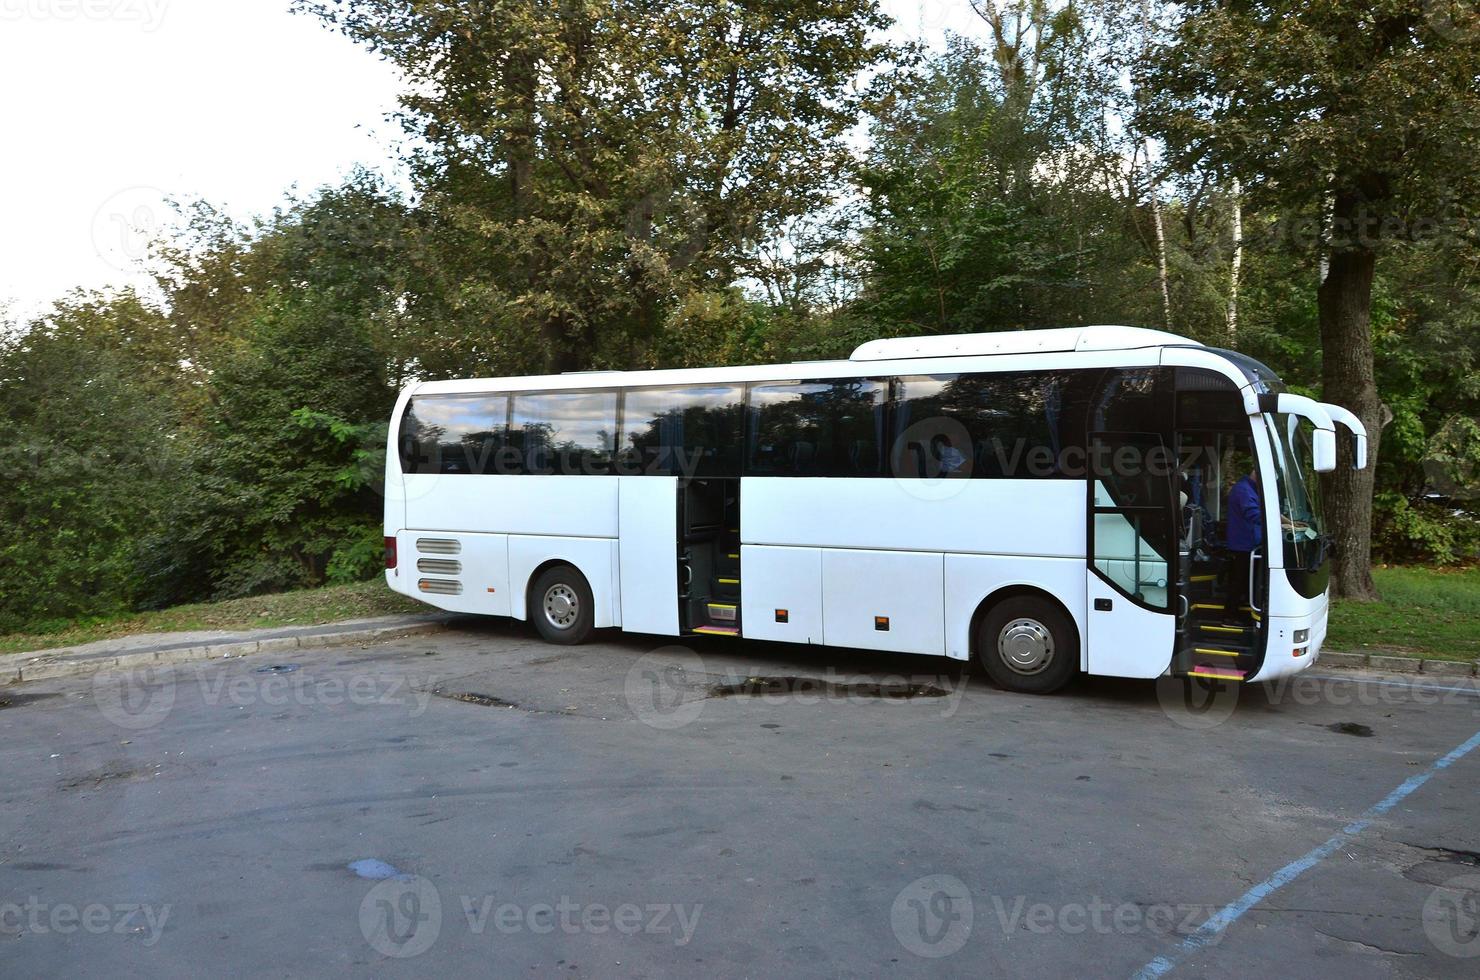 wit toerist bus voor excursies. de bus is geparkeerd in een parkeren veel in de buurt de park foto